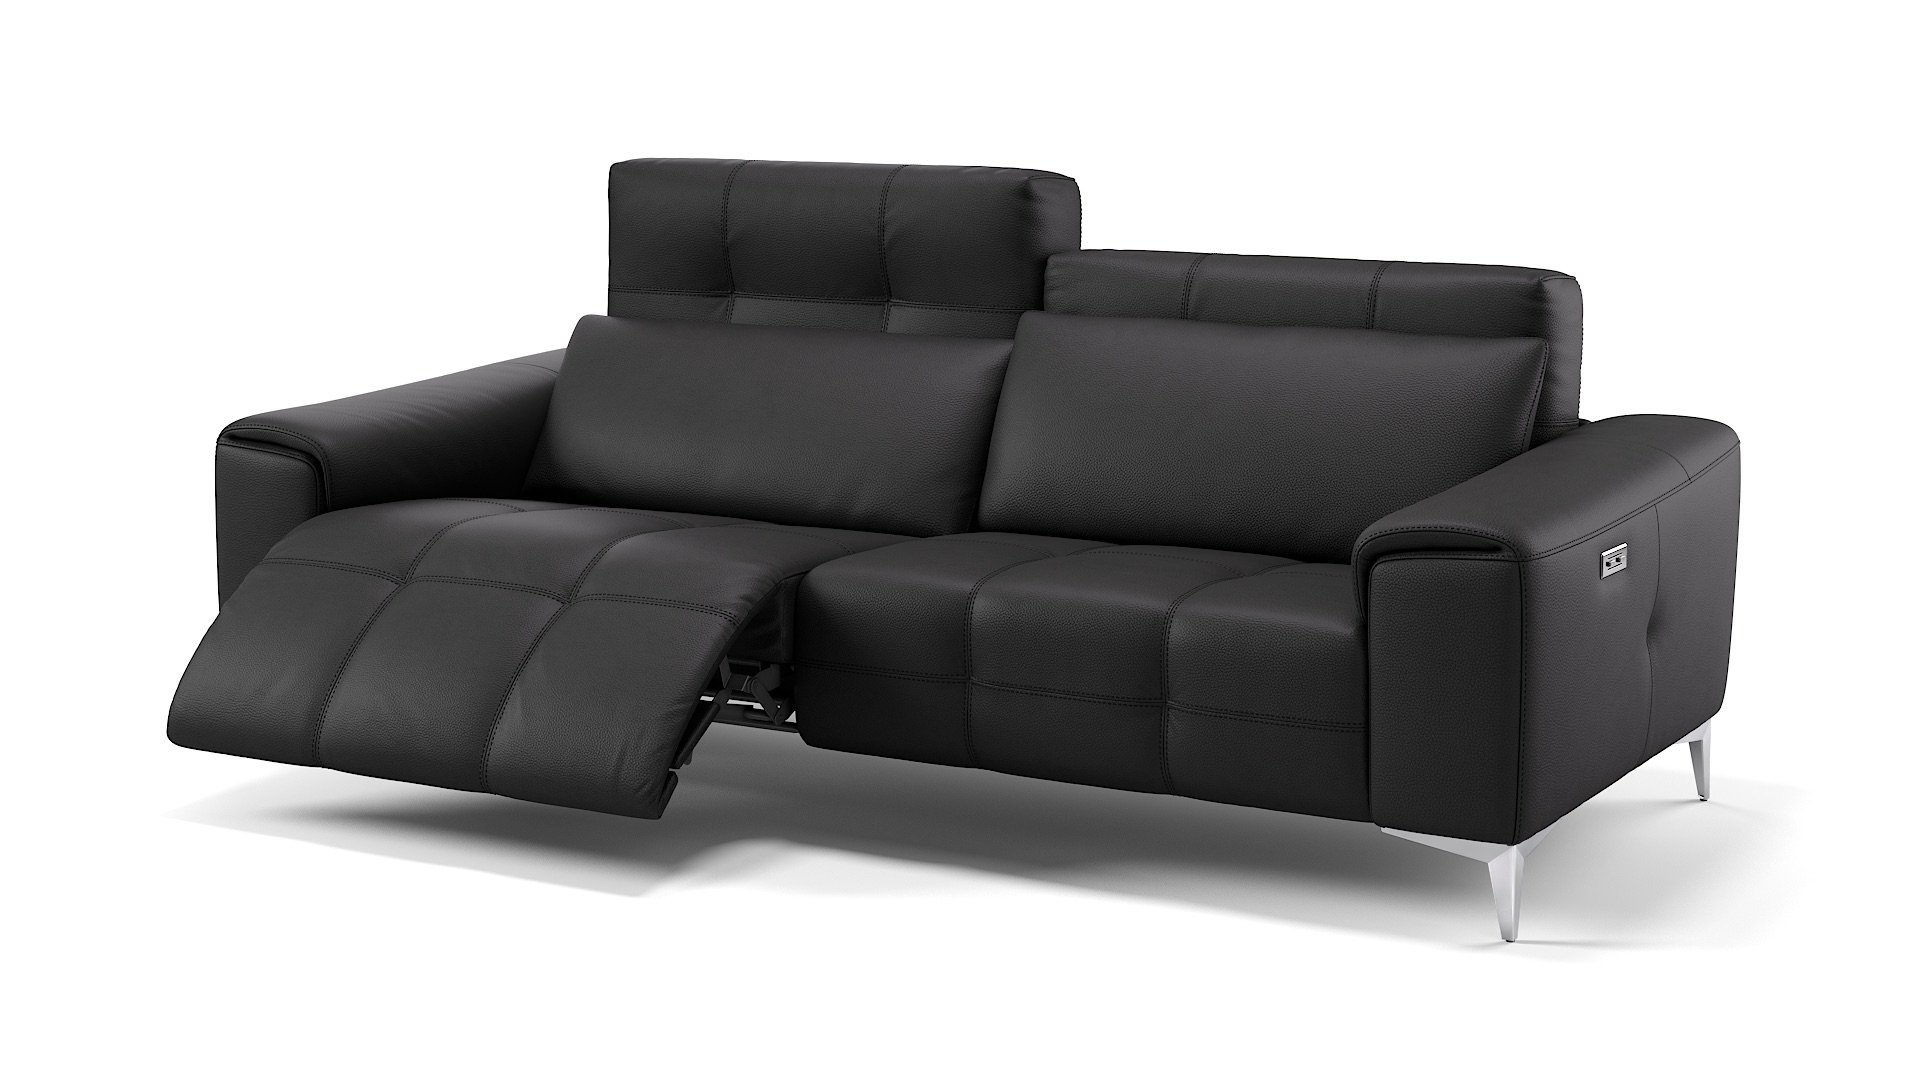 12th Leder Couch Drei-Personen Sofa Puppen Haus Wohnzimmer Möbel schwarz